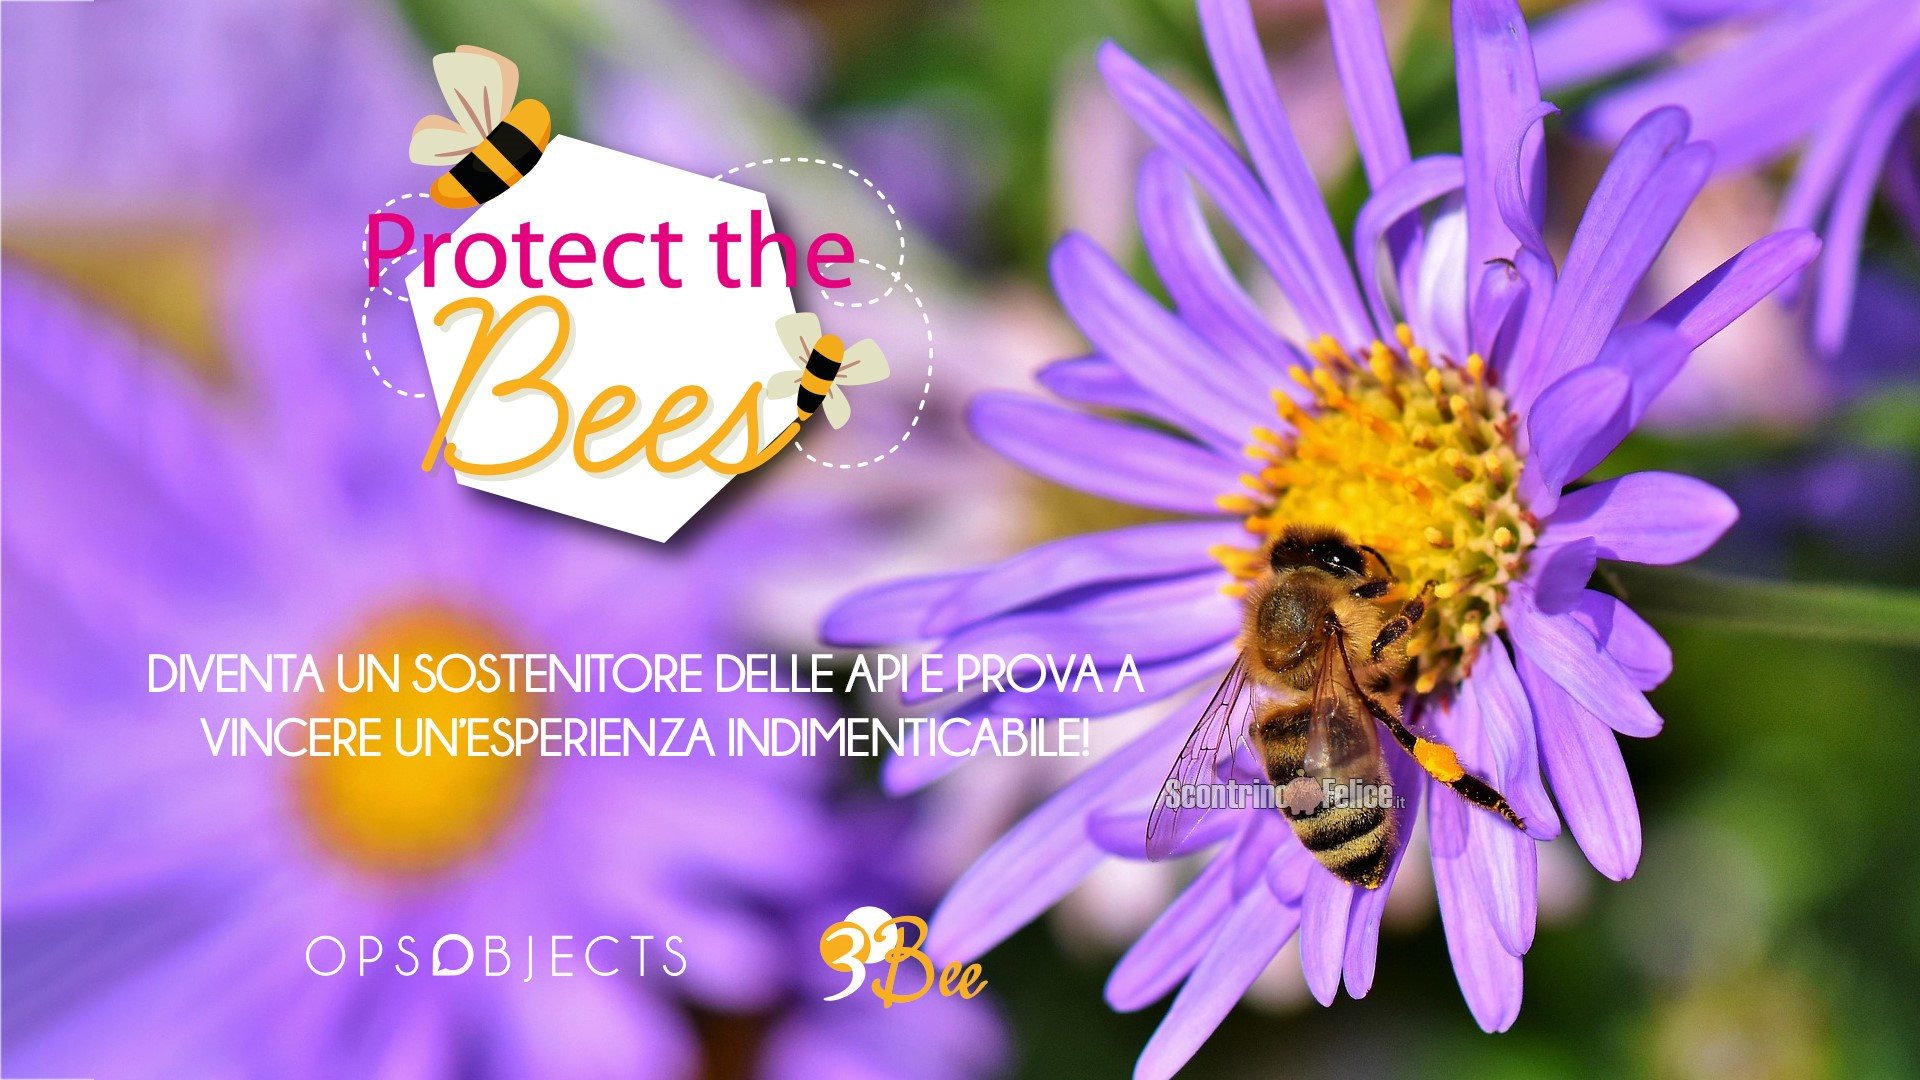 Concorso Ops Object "Protect the Bees": adotta un alveare (come premio sicuro) e diventa apicoltore per un giorno!